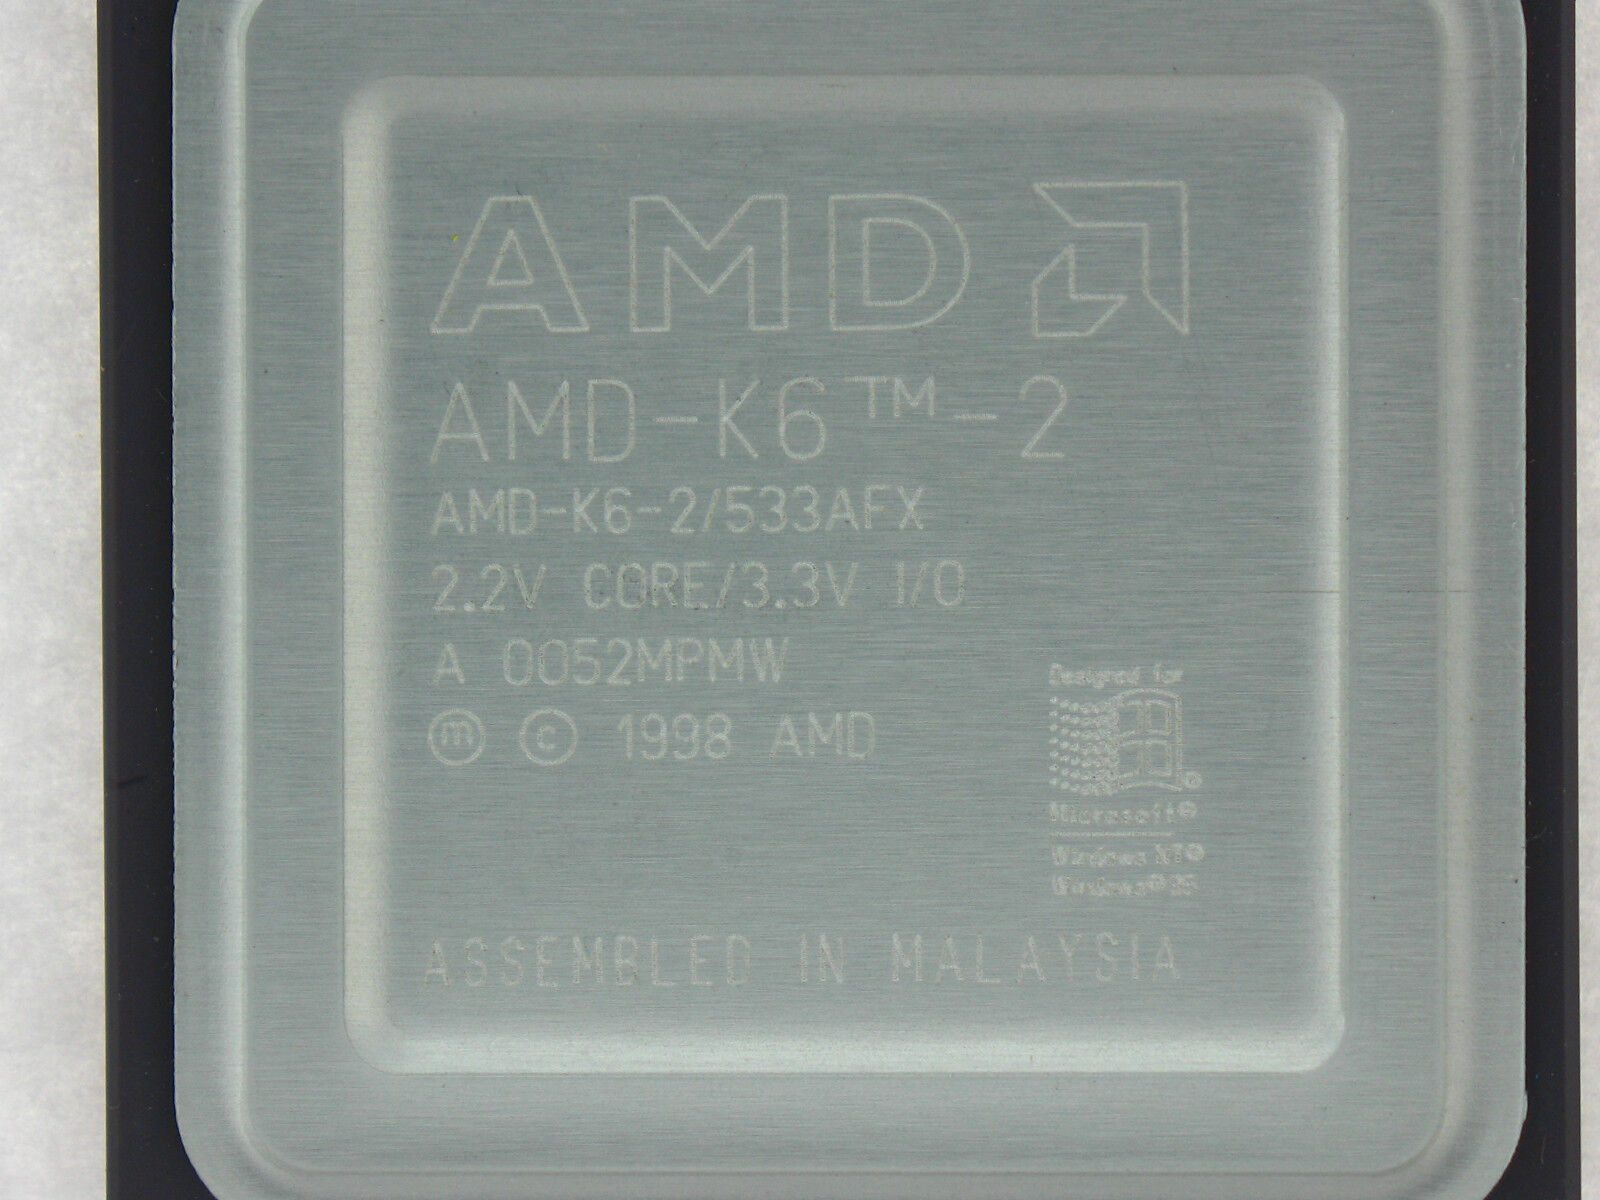 AMD-K6-2/533AFX AMD K6-2 533 MHz CPU